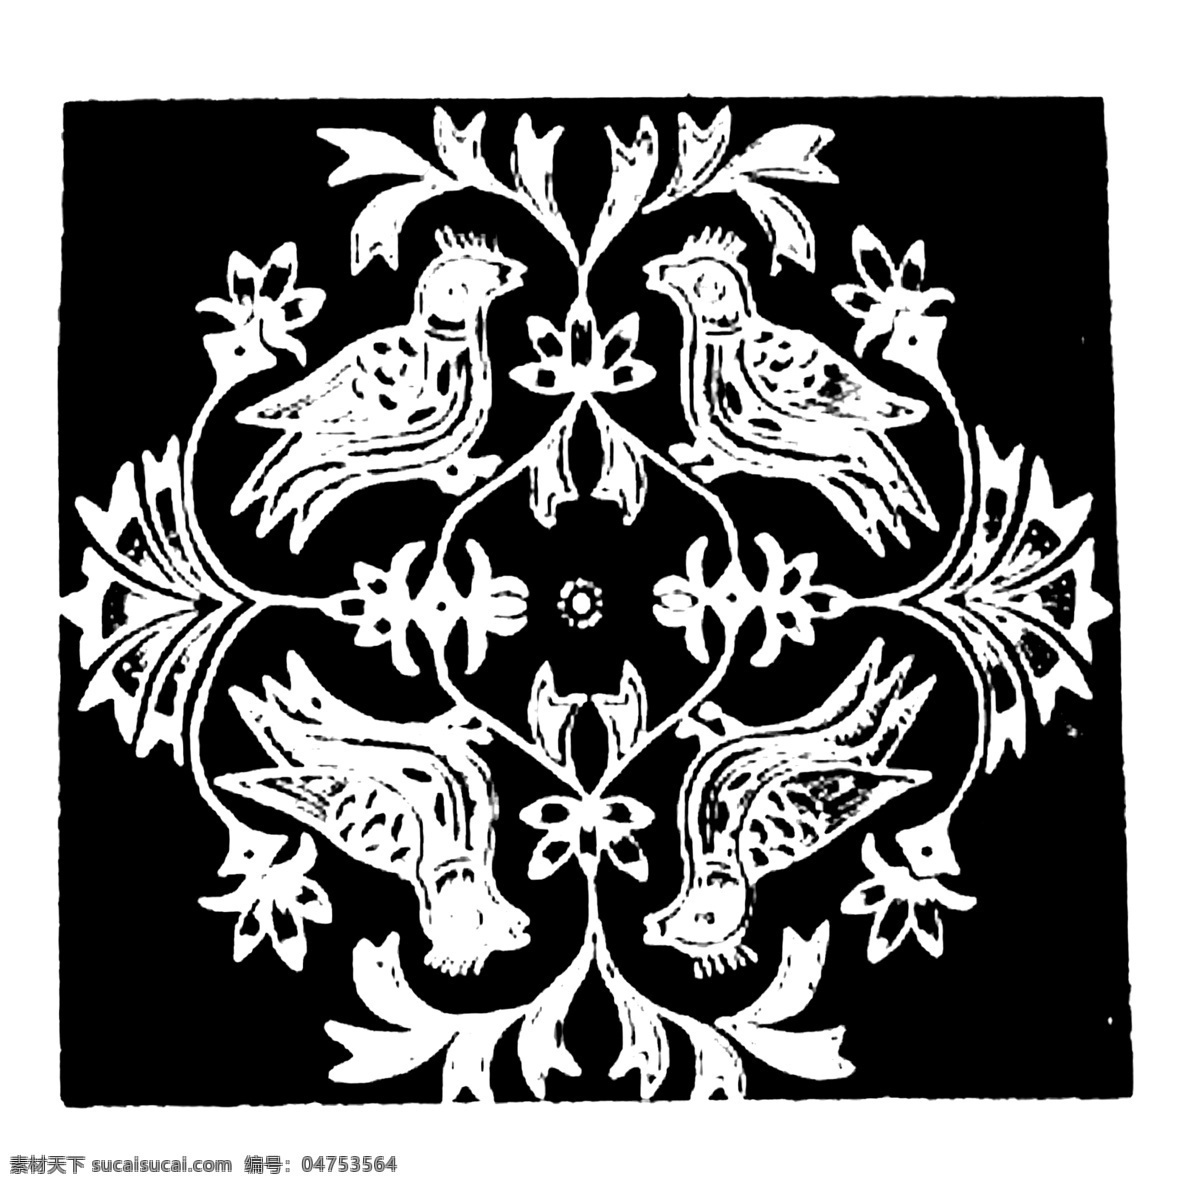 鸟兽纹样 传统 图案 传统图案 设计素材 动物图案 装饰图案 书画美术 黑色